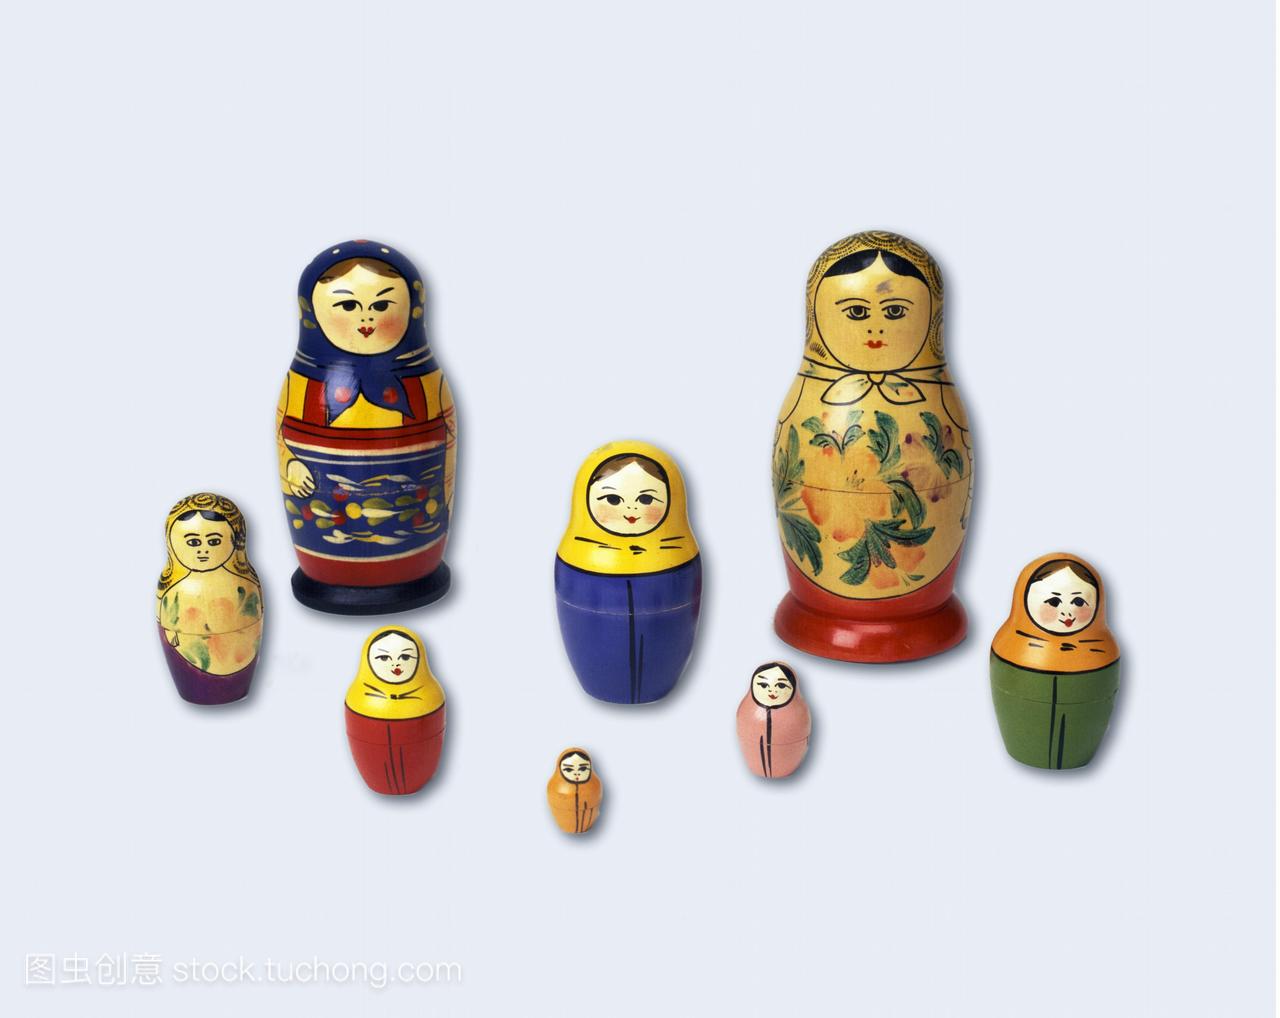 俄罗斯娃娃。这个数组的木制娃娃一组形式。他